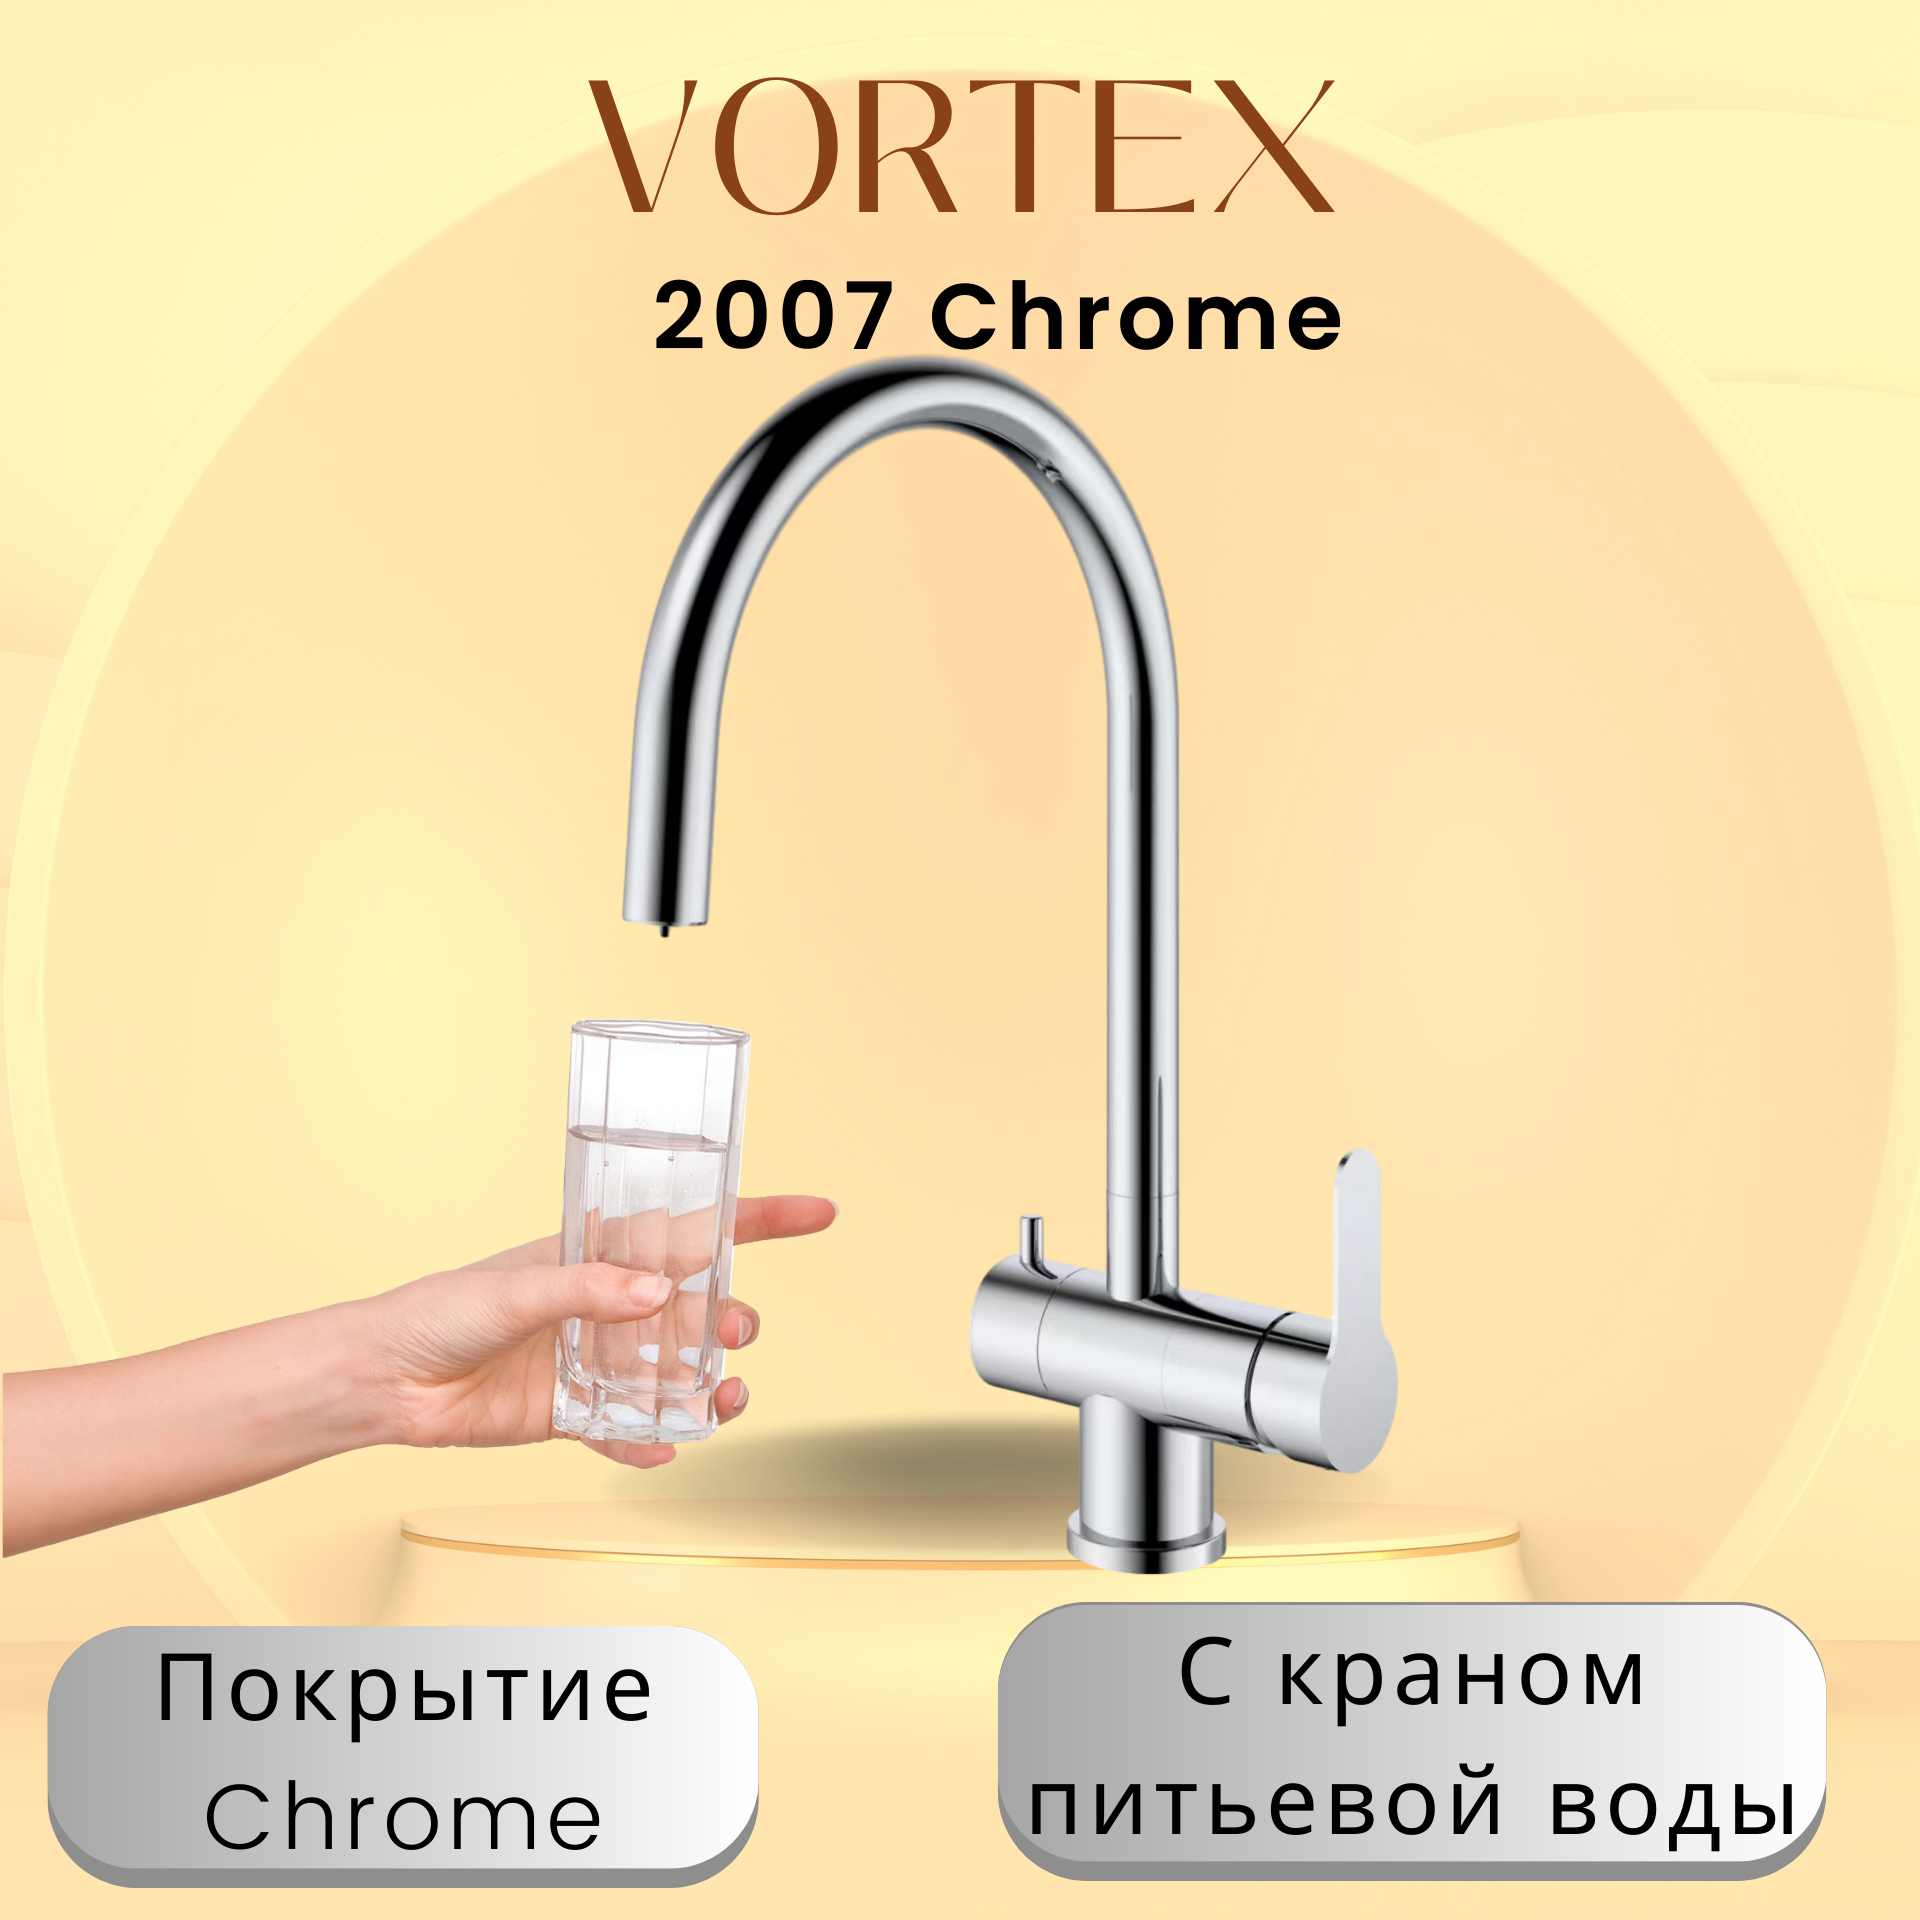 Кухонный смеситель с краном питьевой воды Vortex VX-2007 Chrome